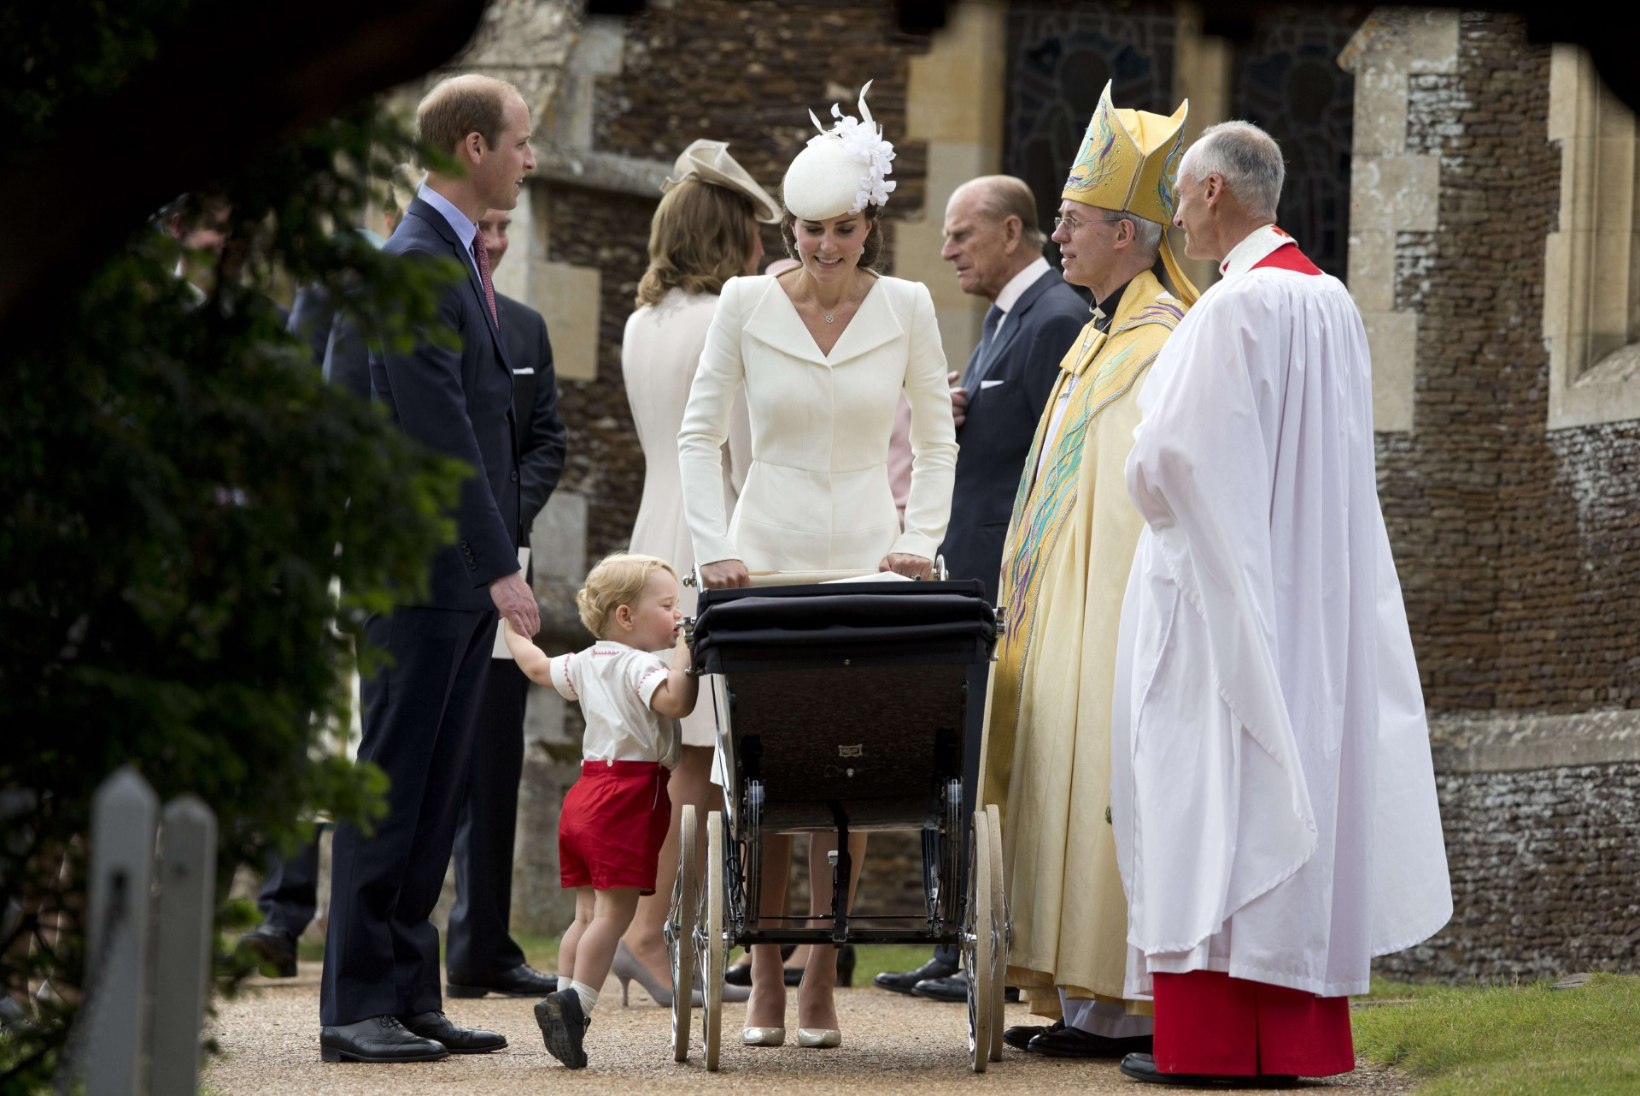 Briti kuningakoda pidas printsess Charlotte’i ristseid